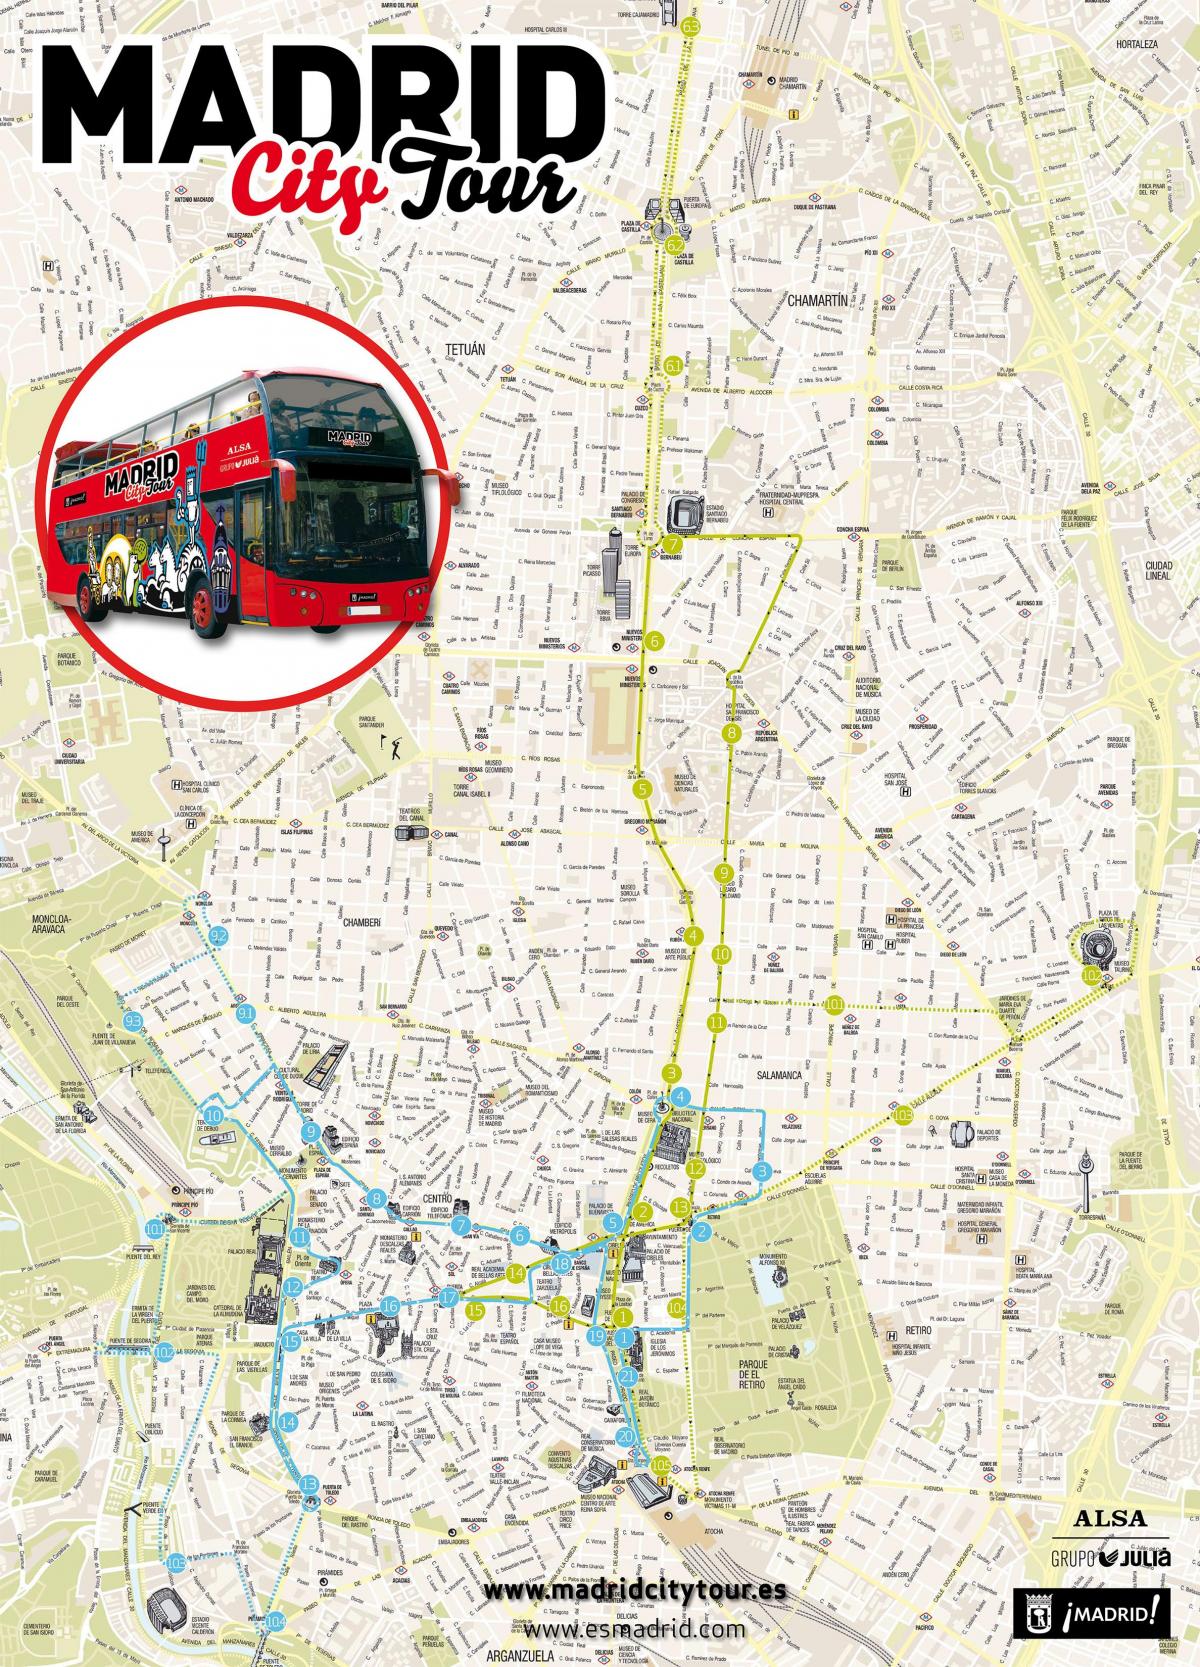 Madrid city tour de ônibus mapa